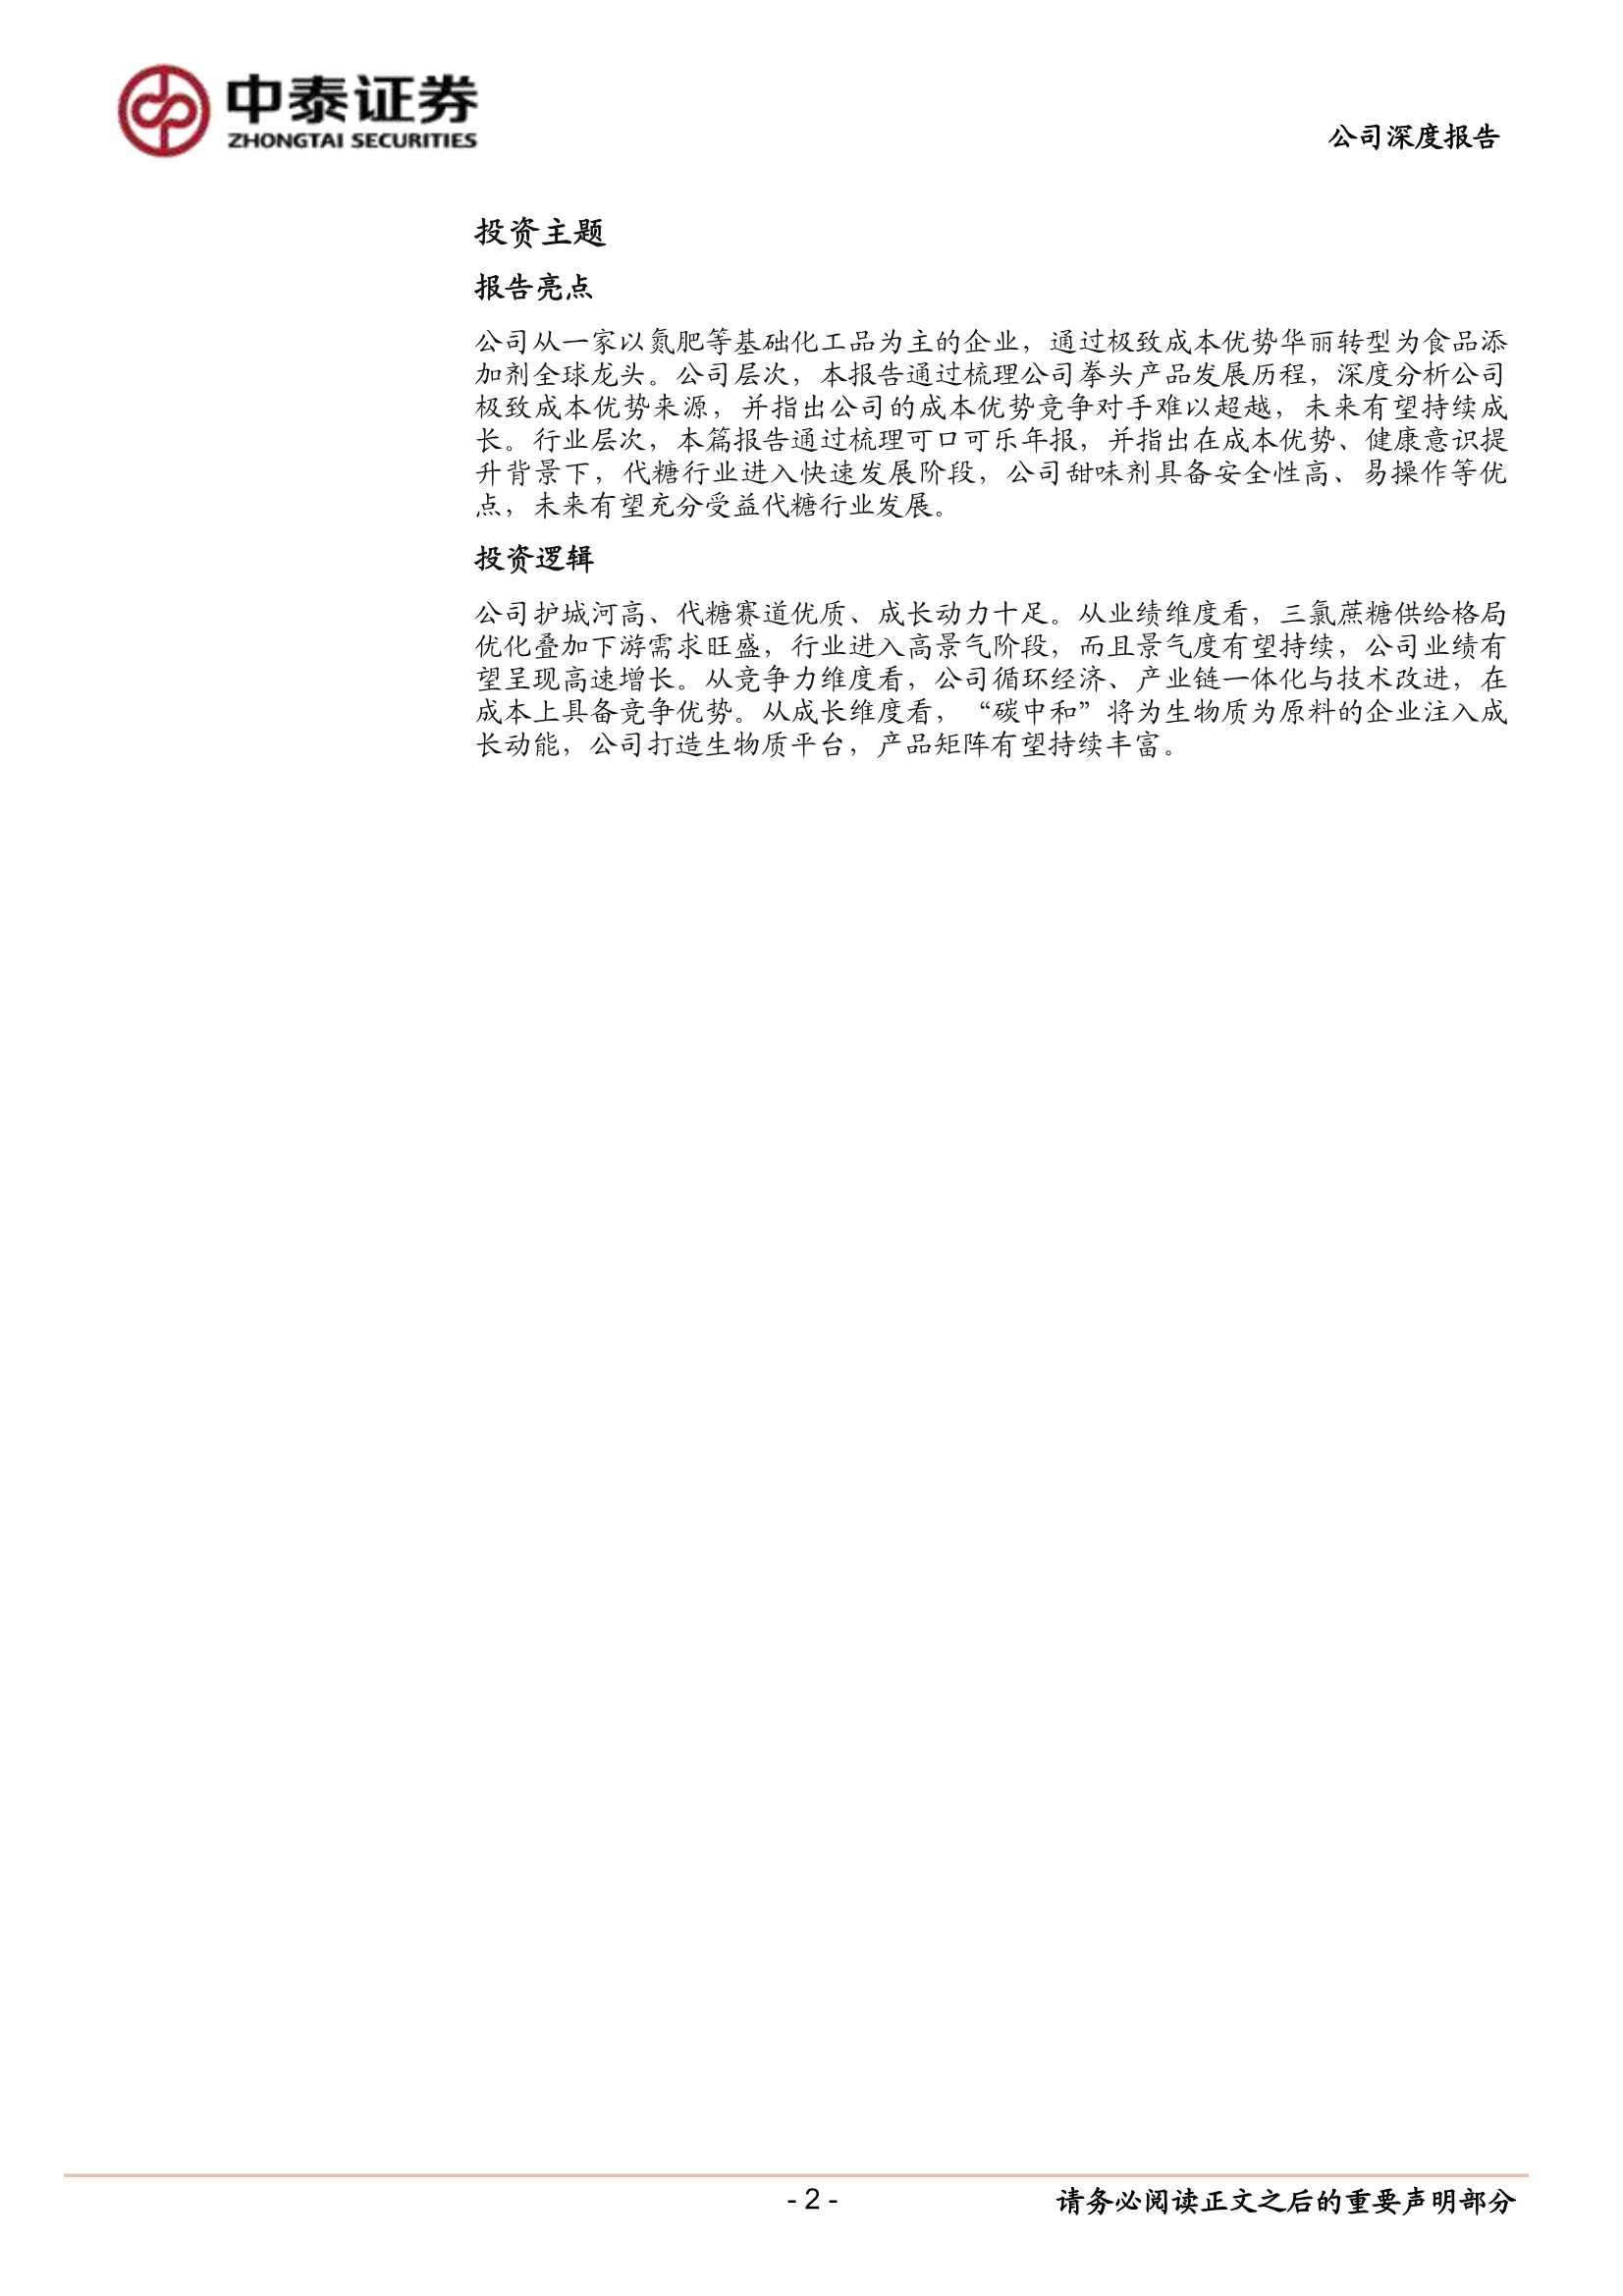 中泰证券-金禾实业-002597-复盘十年历程，再论周期与成长-20220108-26页